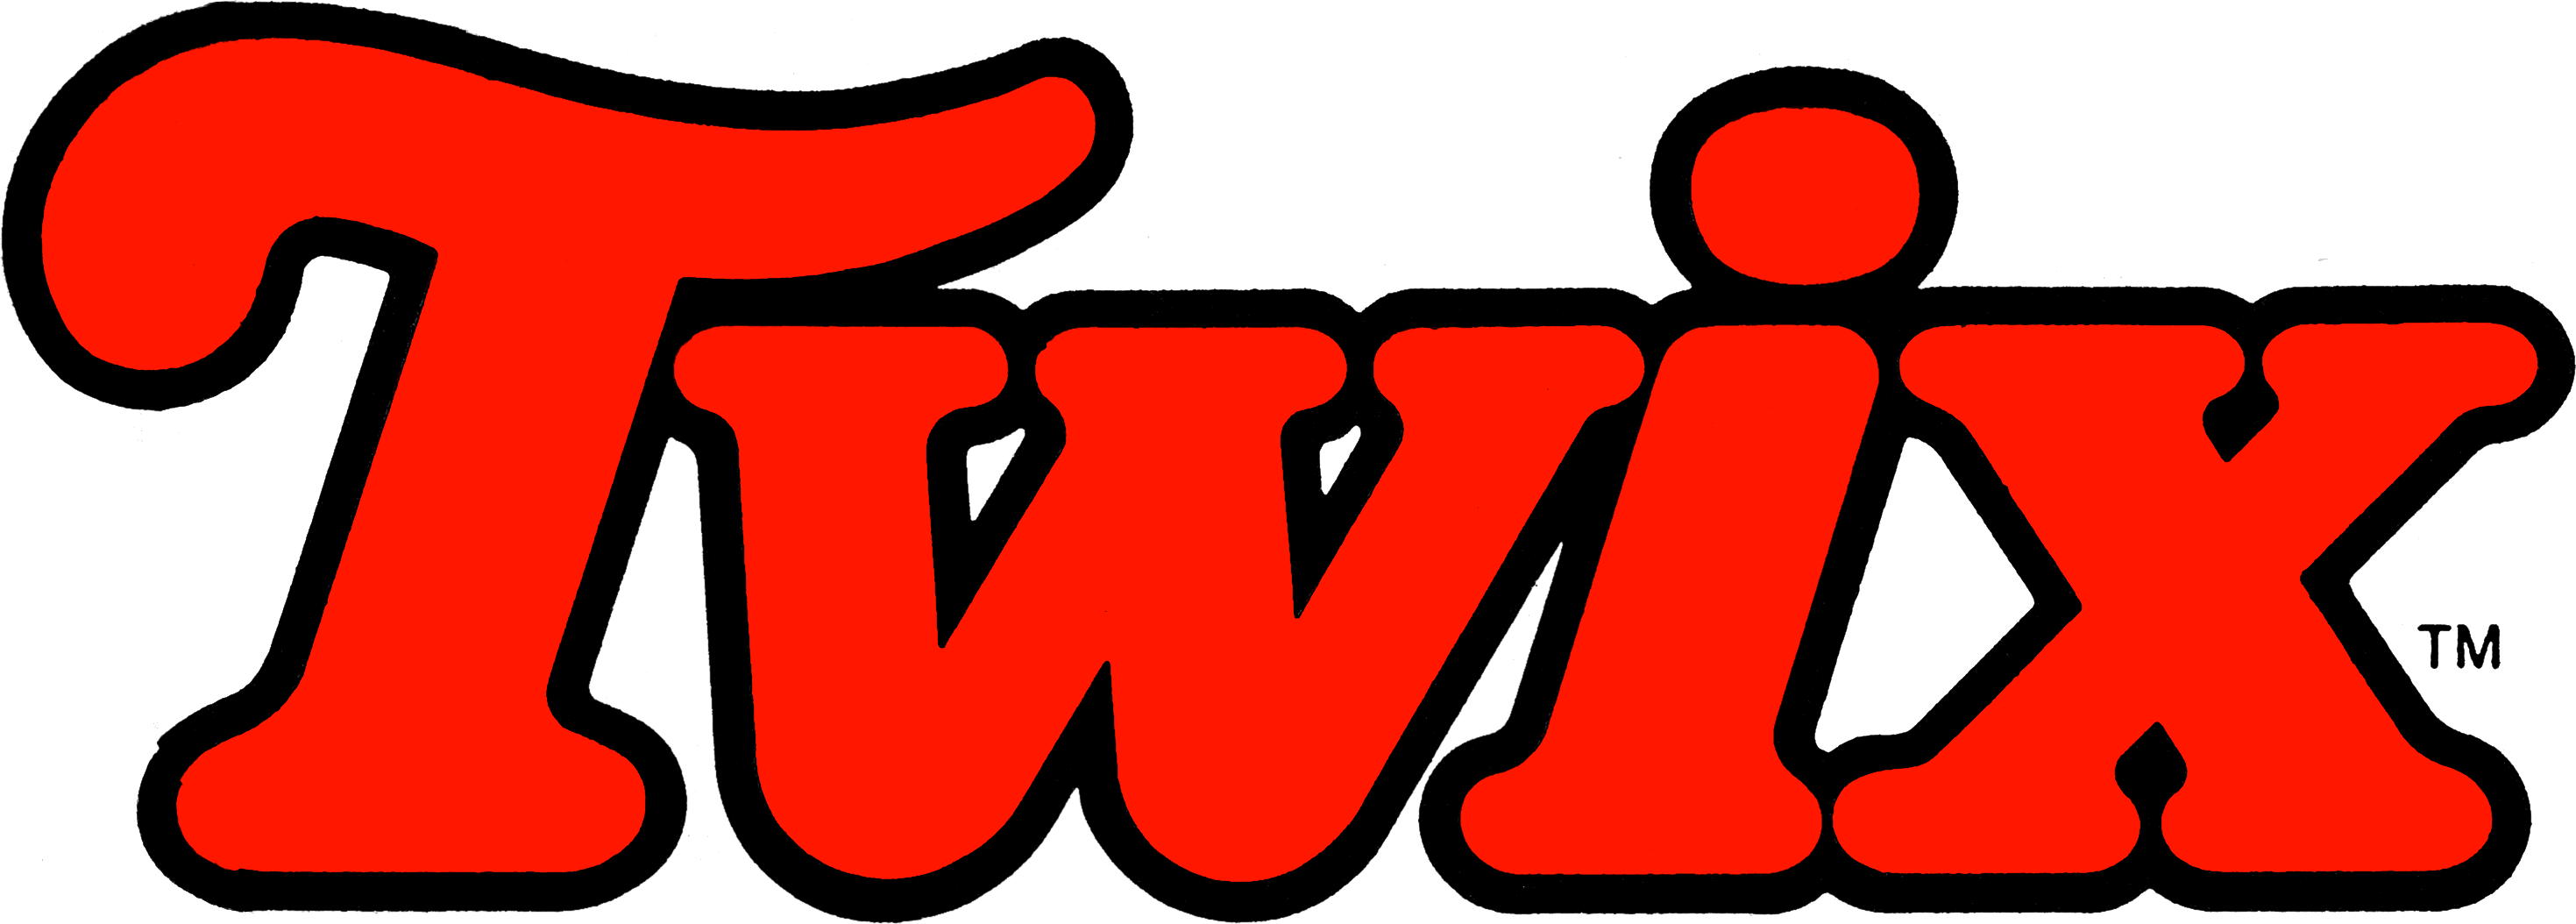 Twix Logo - Twix | Logopedia | FANDOM powered by Wikia